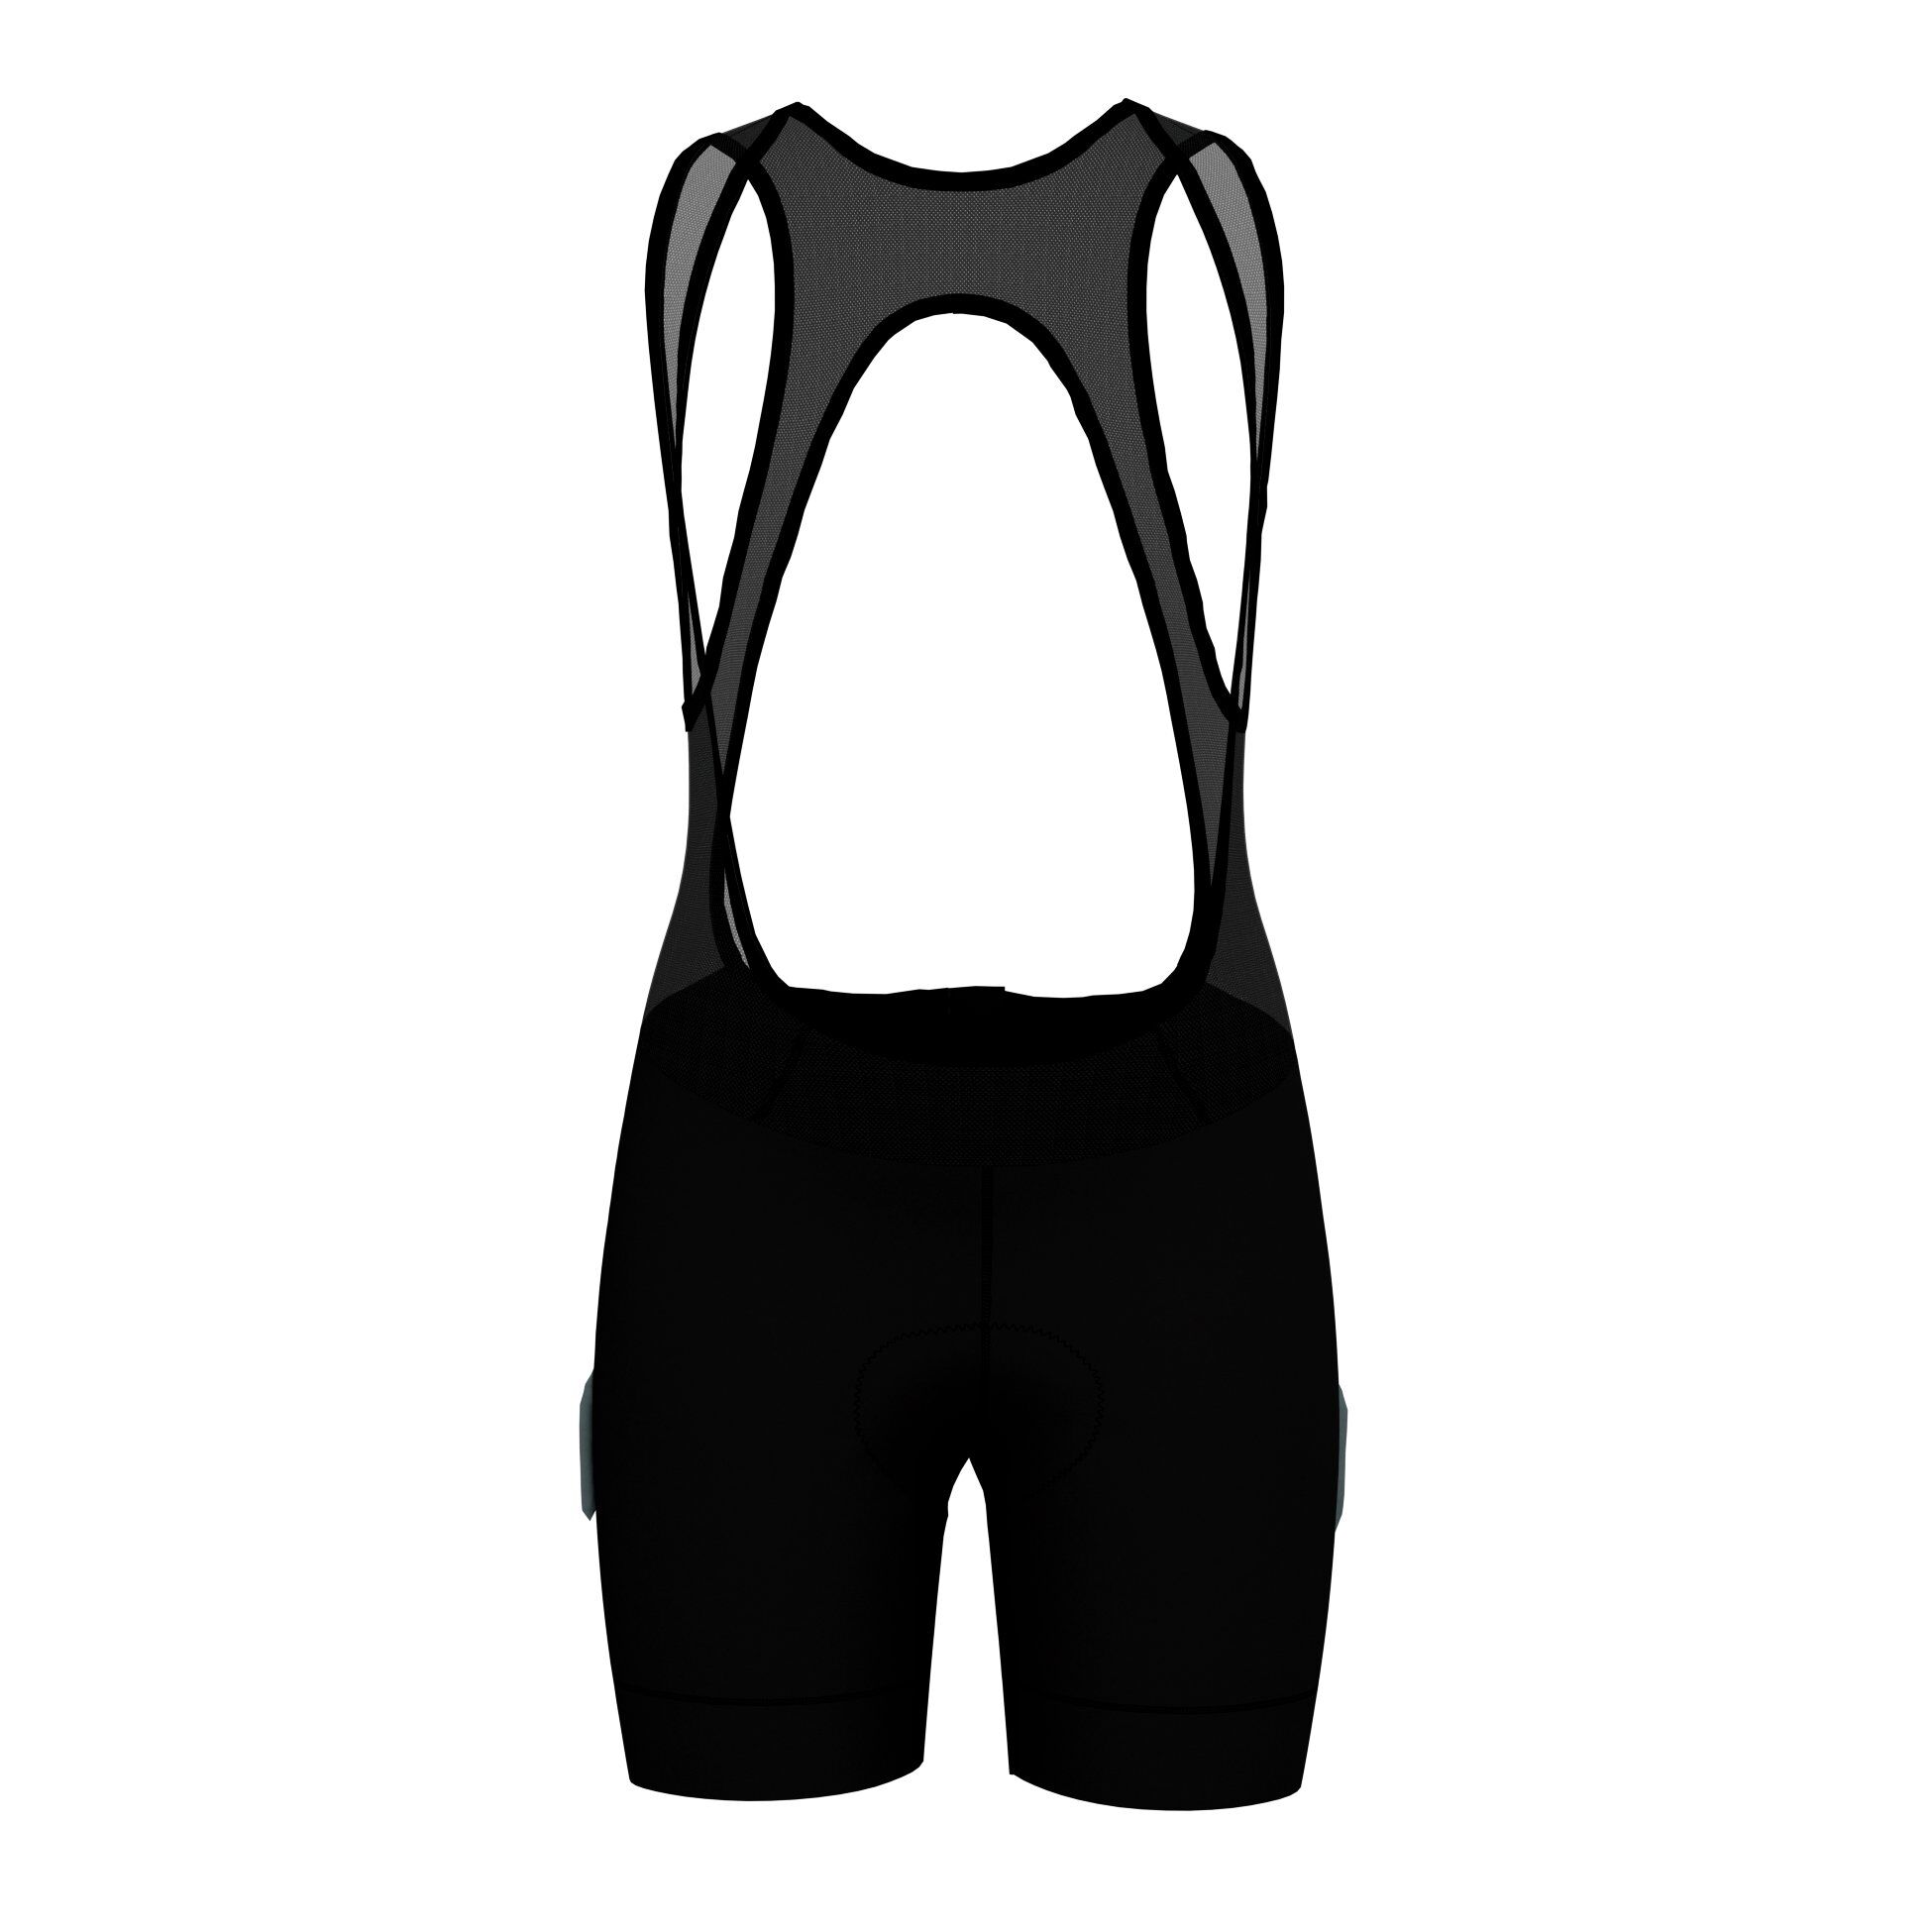 Odlo Zeroweight - Cycling shorts - Women's